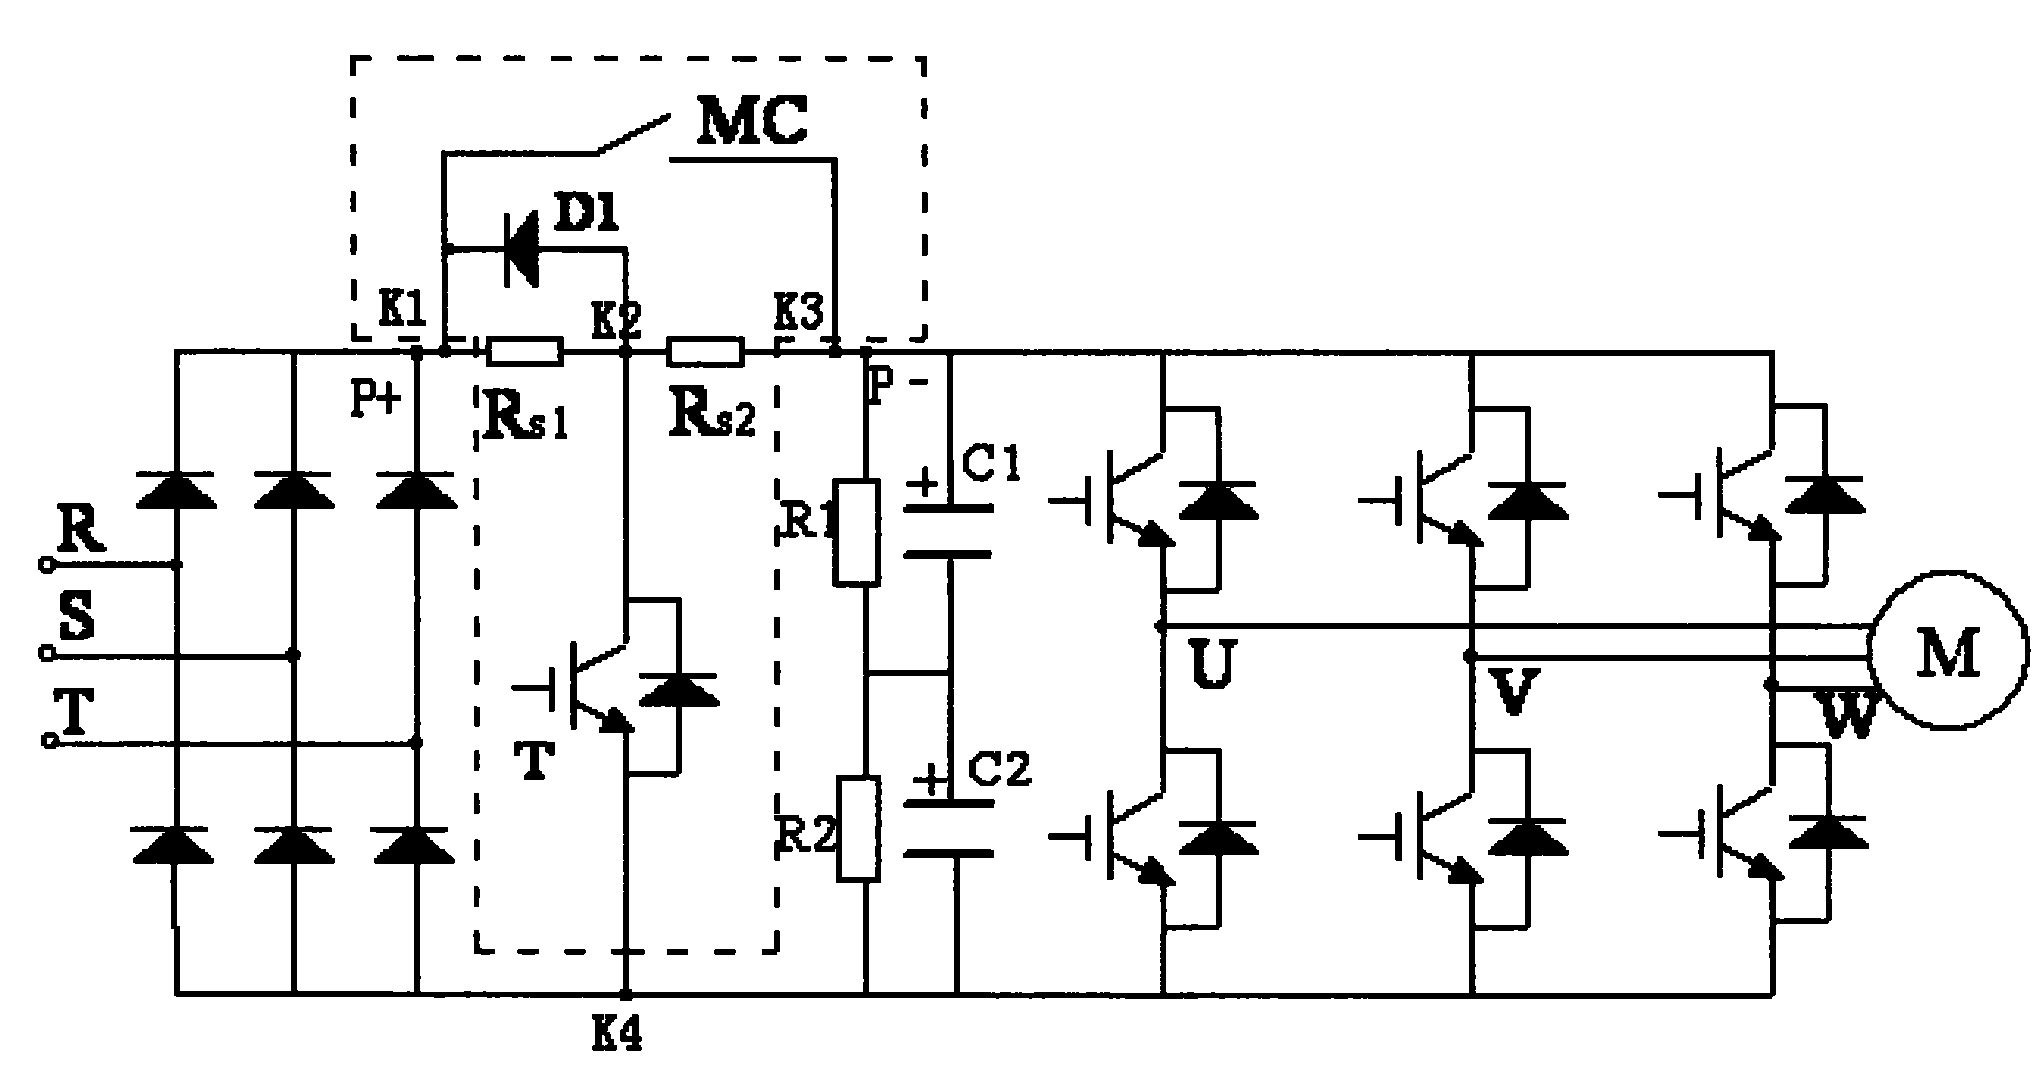 变频模块电路原理图图片